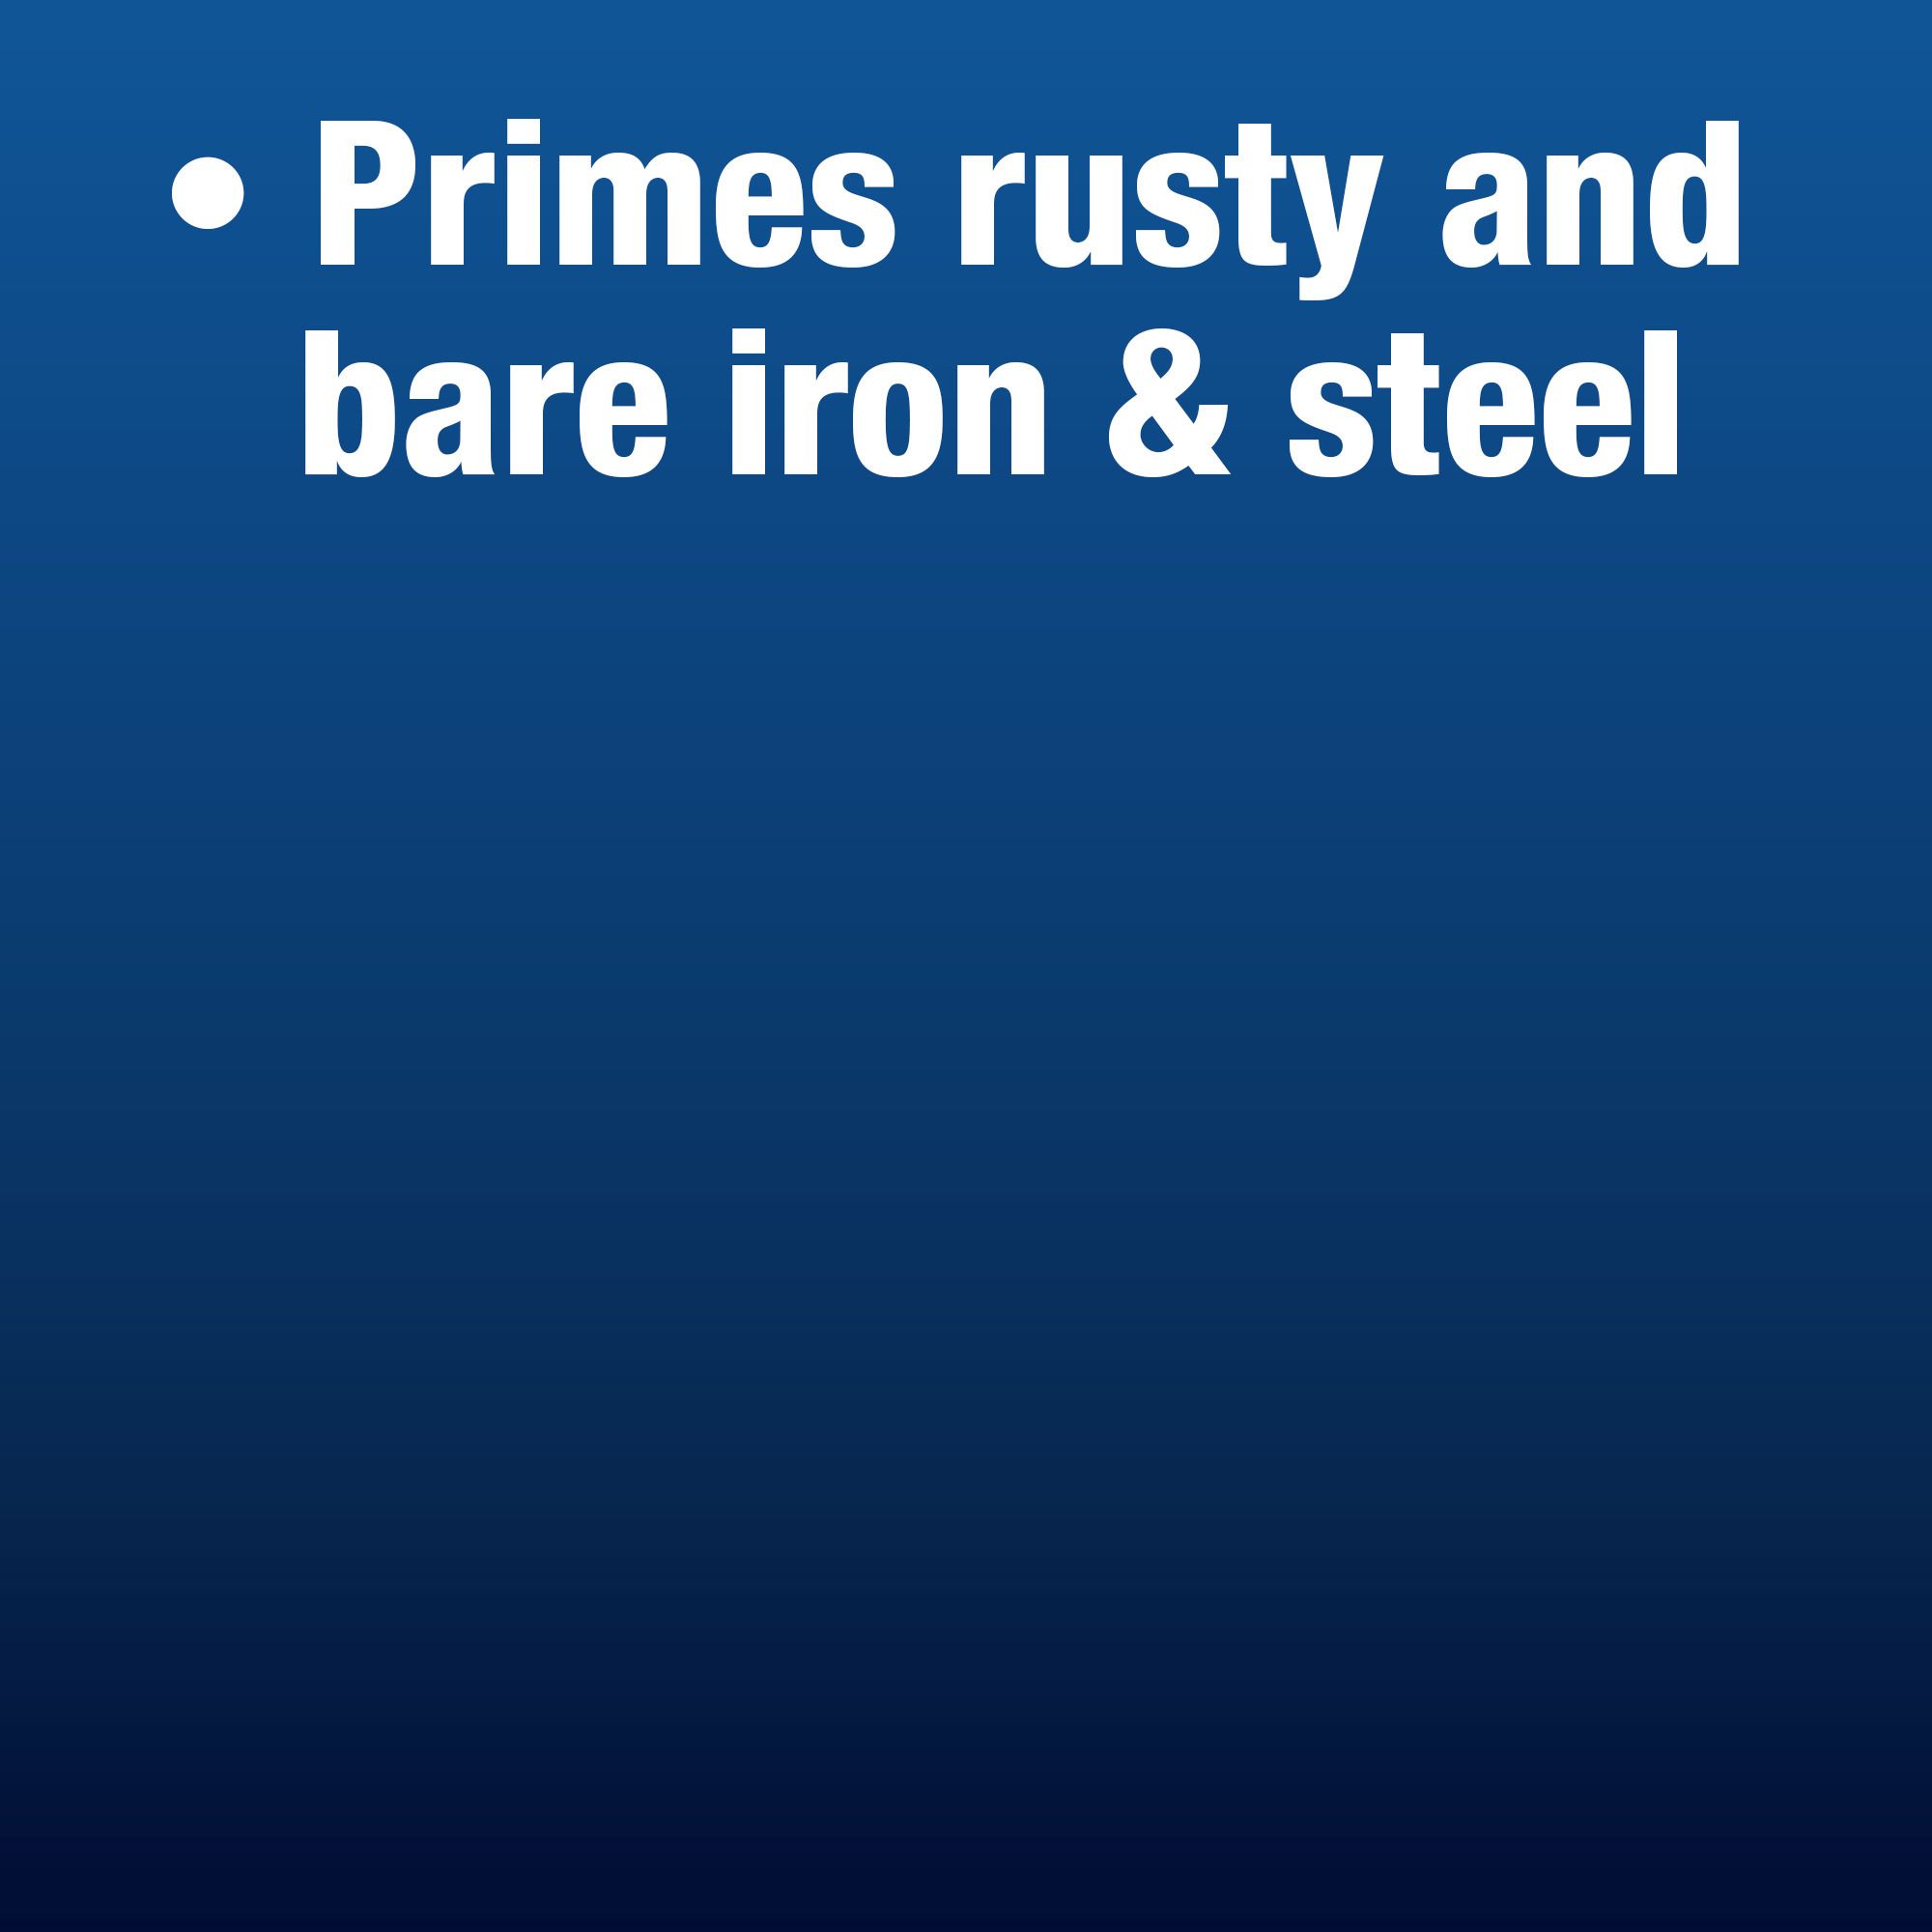 Hammerite Red Iron & steel Primer, 500ml